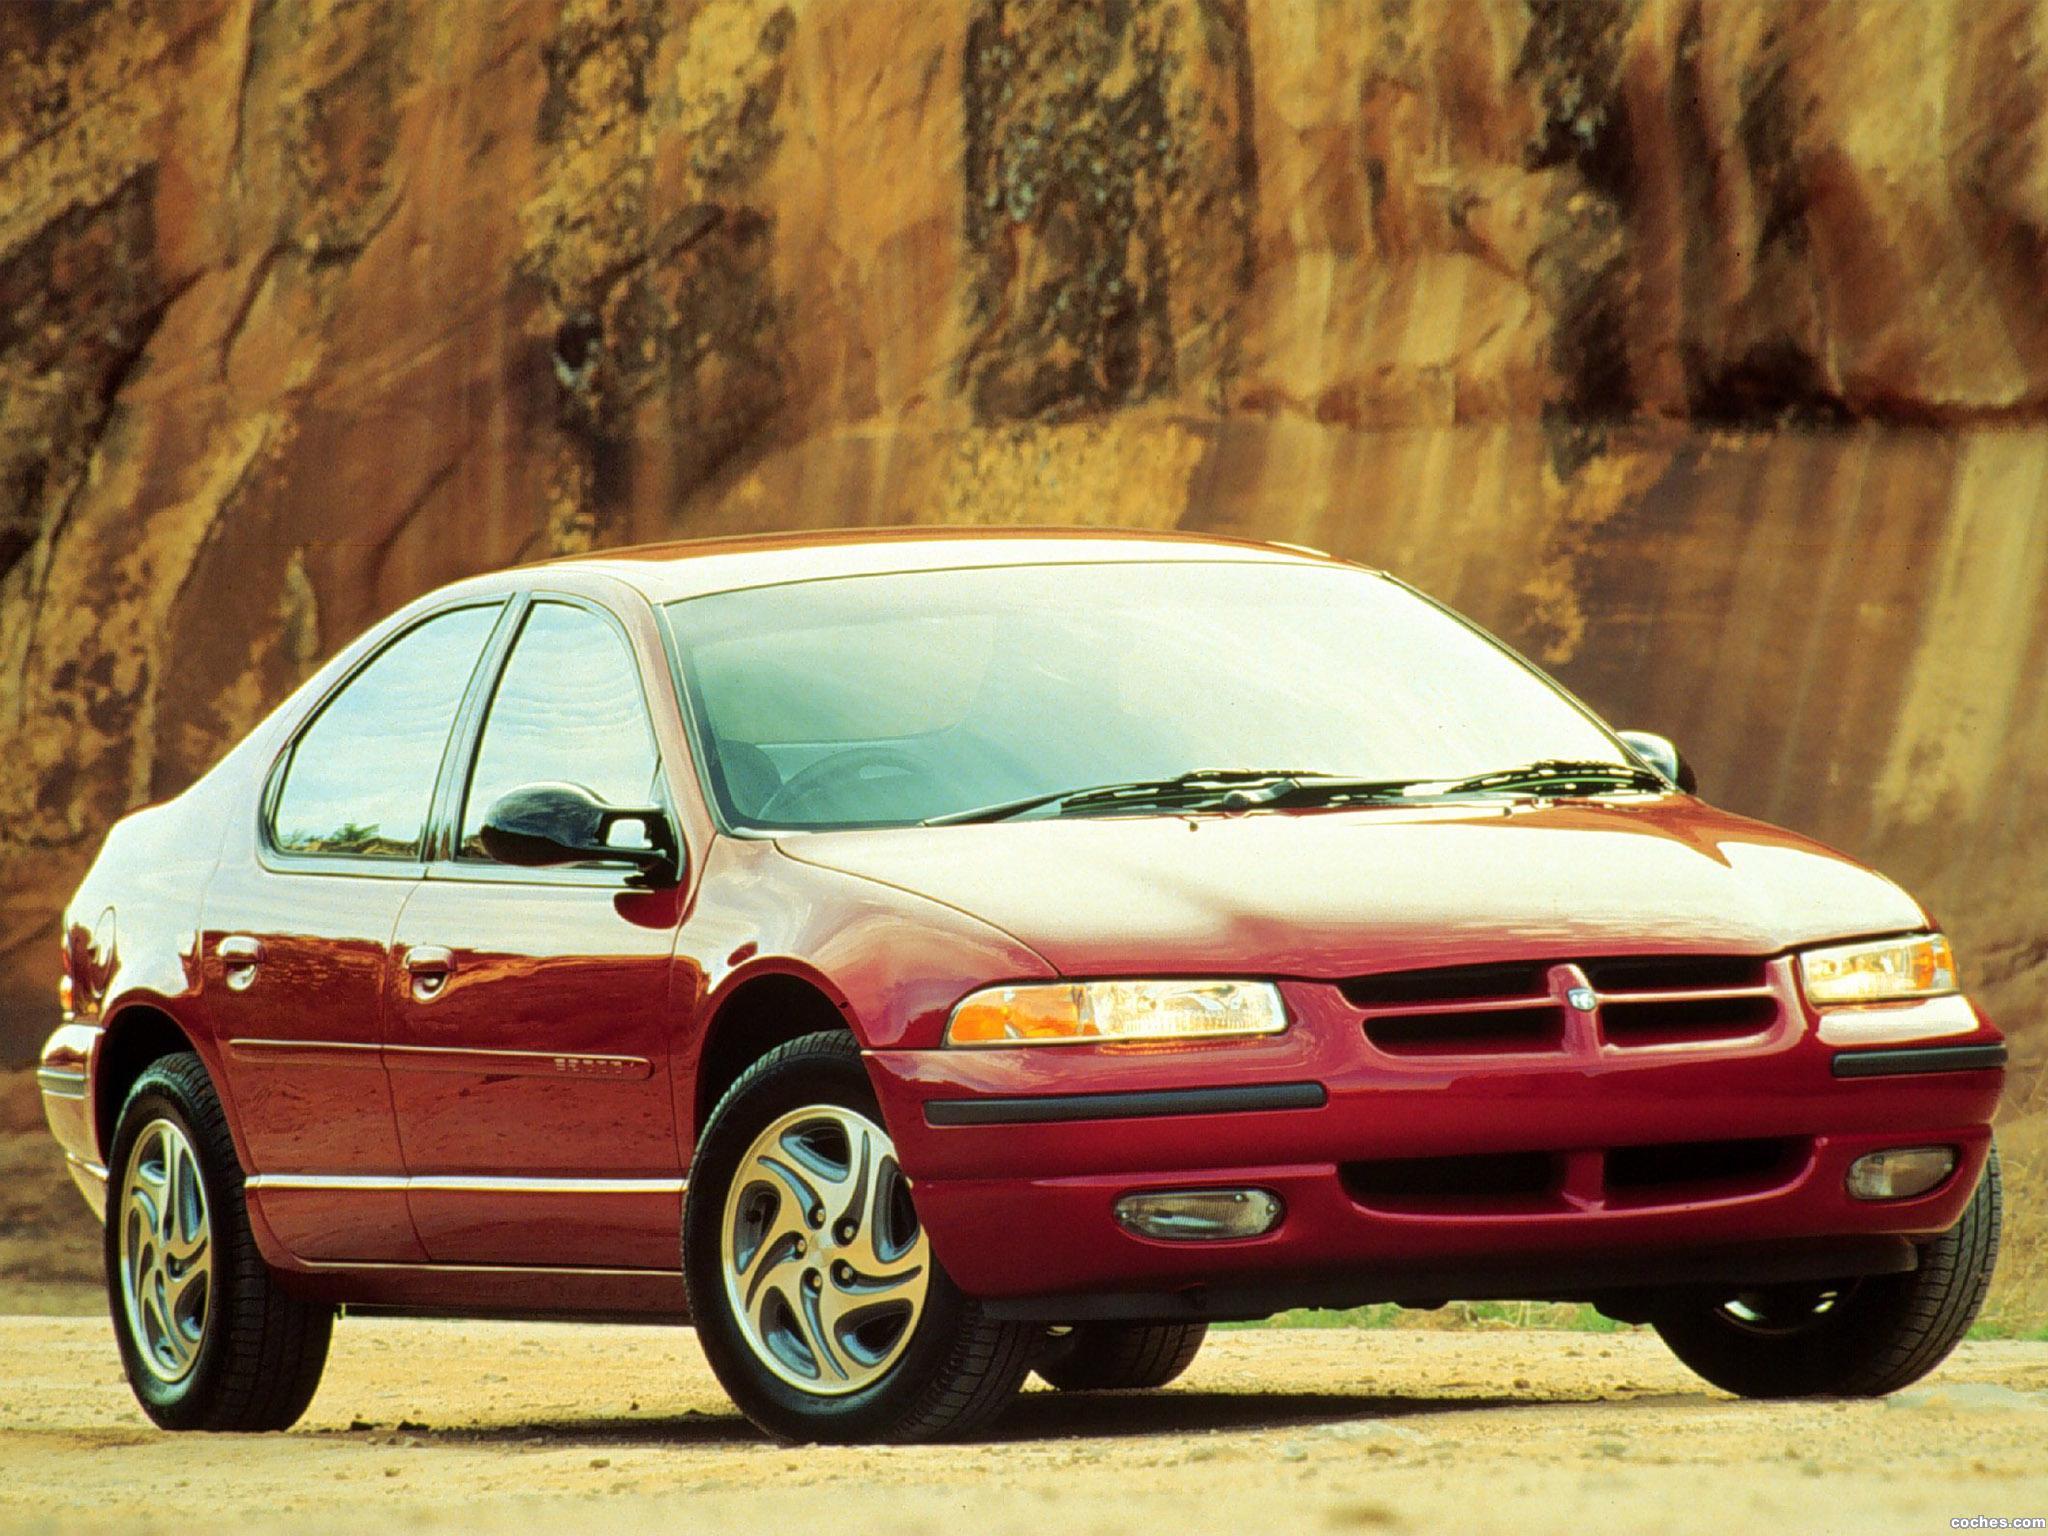 Dodge stratus. Dodge Stratus 1995. Dodge Stratus 2000. Dodge седан 2000. Додж Стратус 1995.